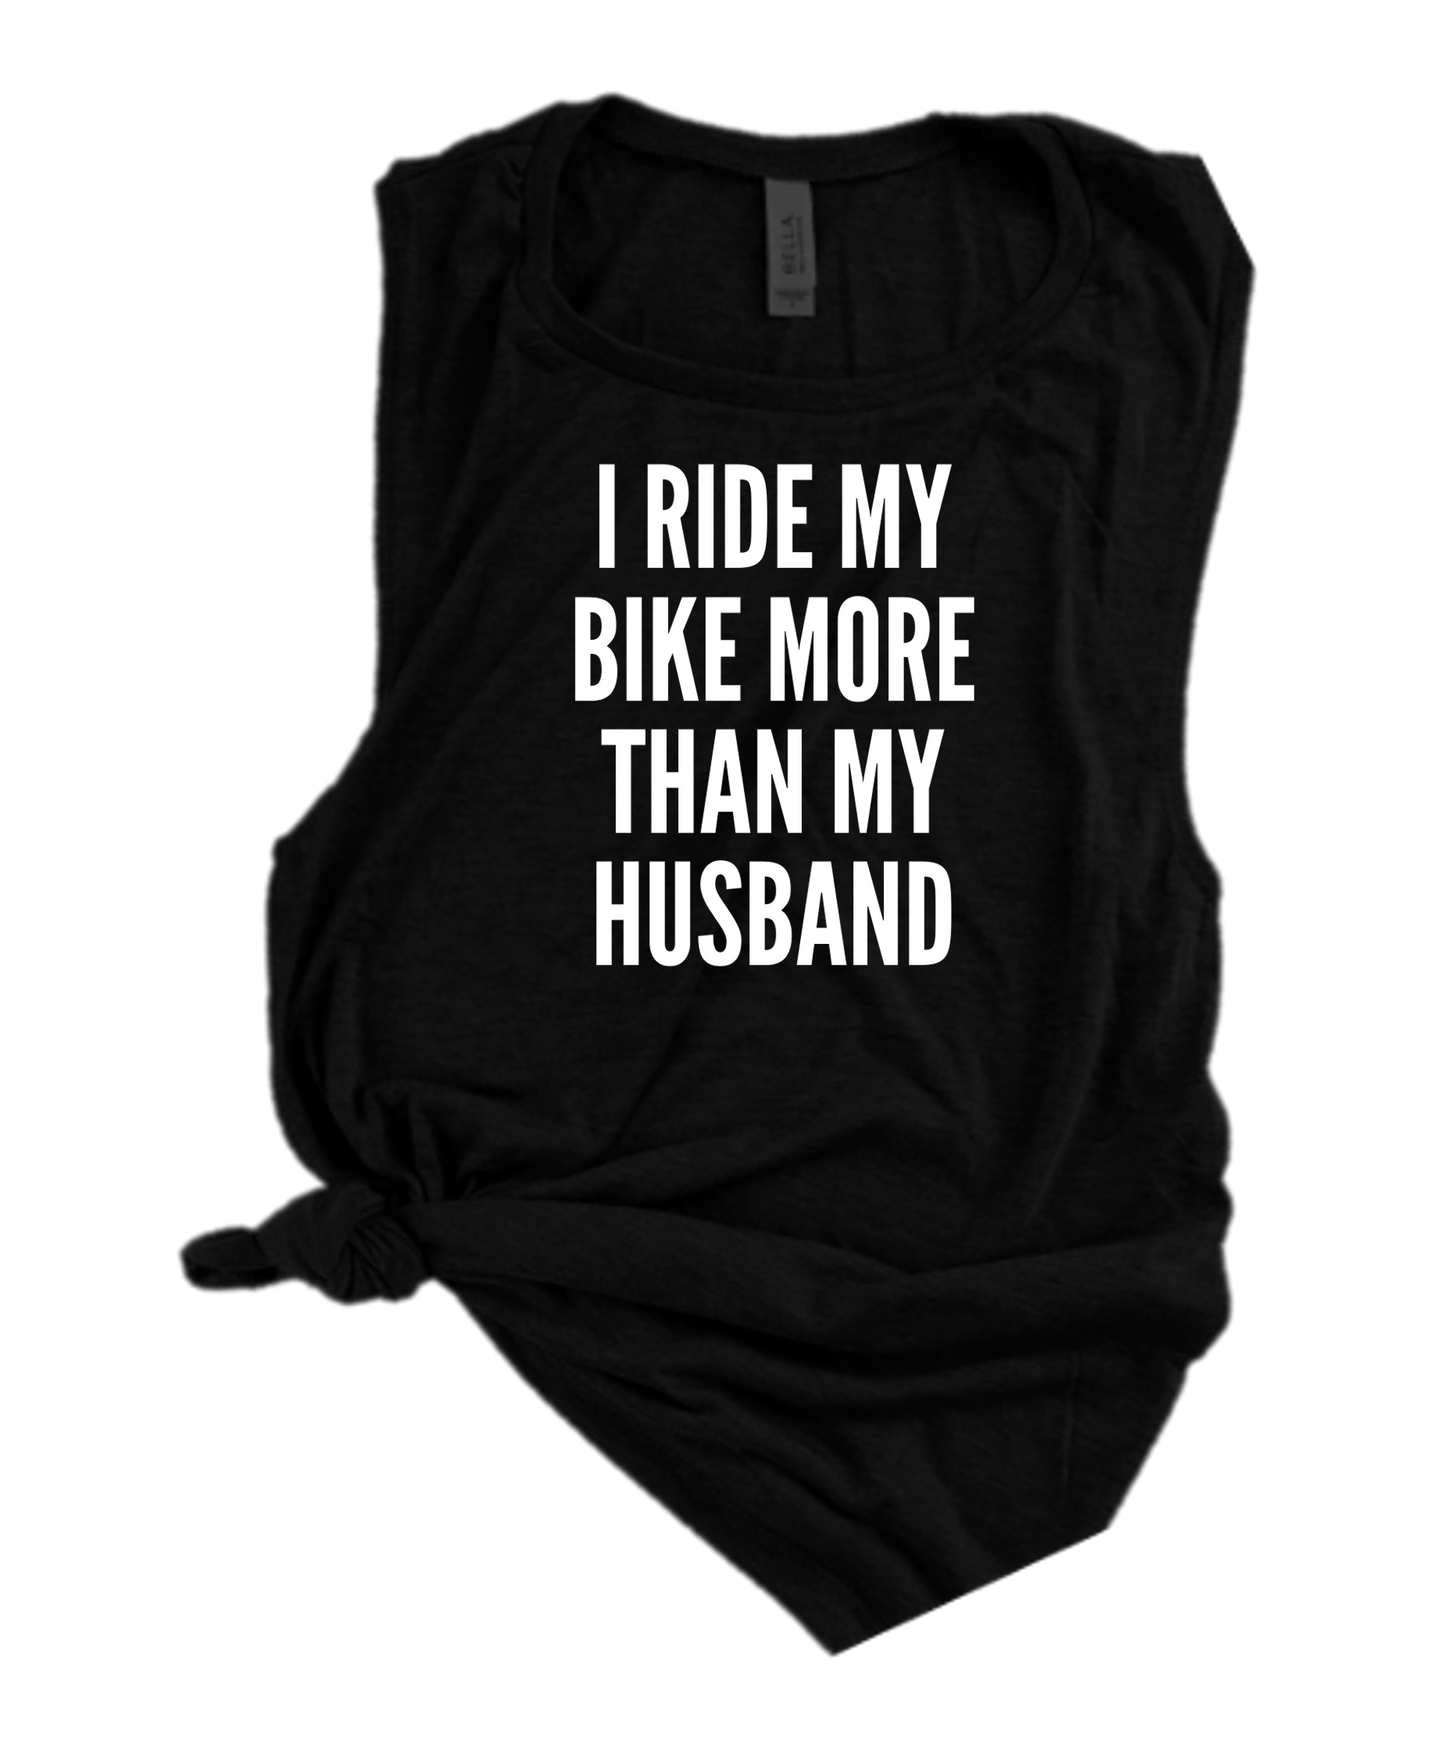 I RIDE MY BIKE MORE THAN MY HUSBAND